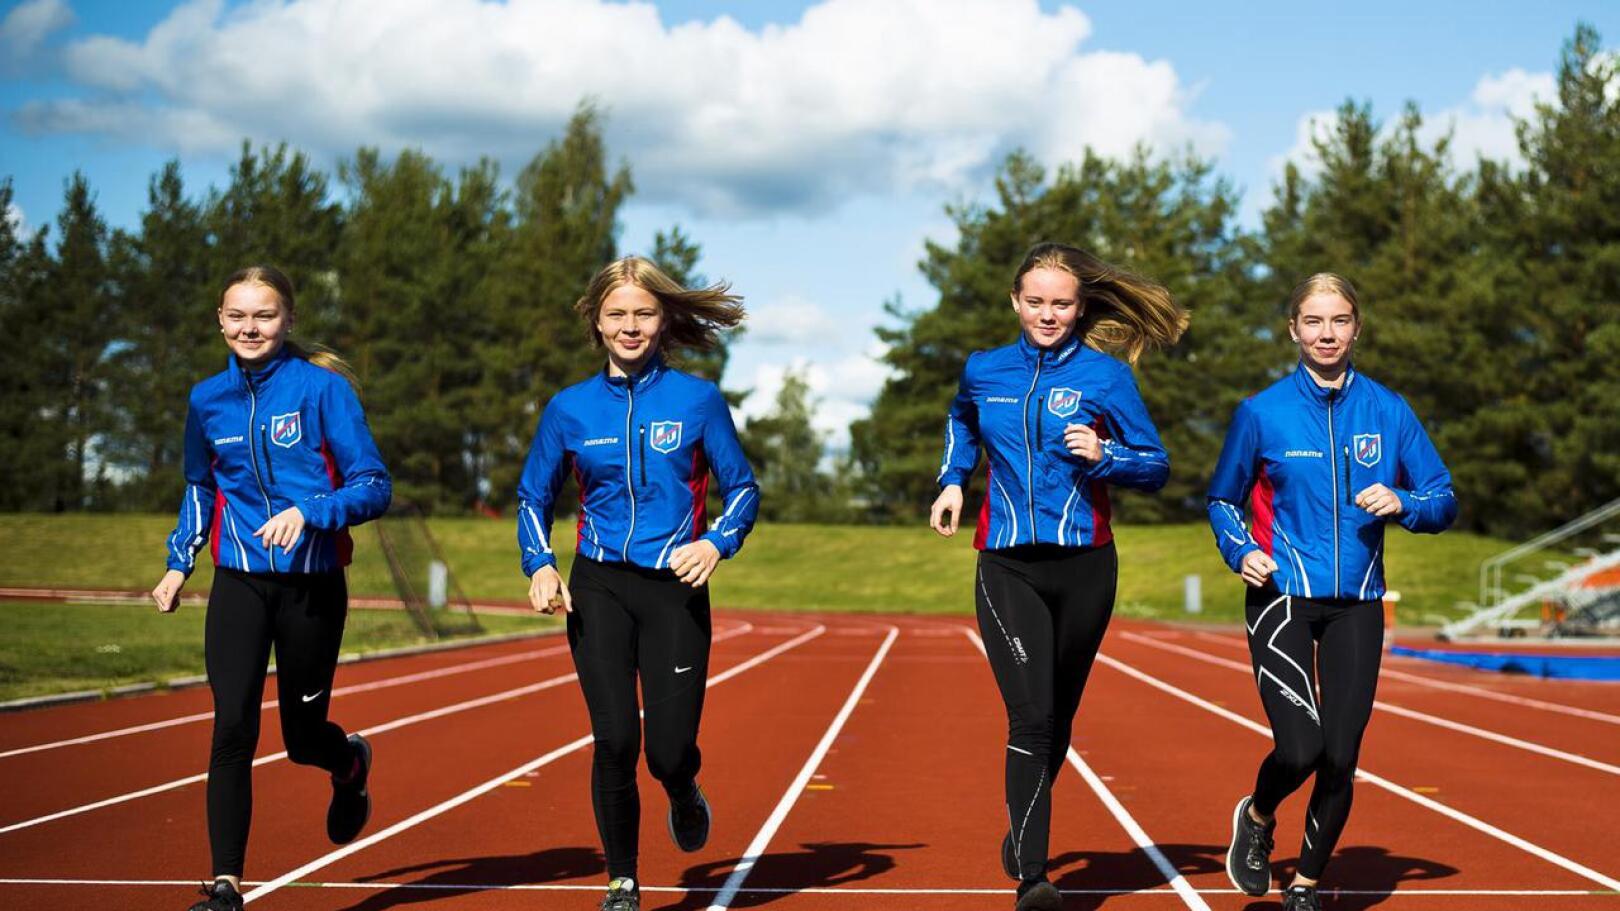 Kauden päätavoitetta kohti. Anni Niku (vas.), Emma Mäkinen, Iida Rautio ja Liinu Tiainen juoksevat ensi viikolla ikäluokkansa kärkinimiä vastaan.